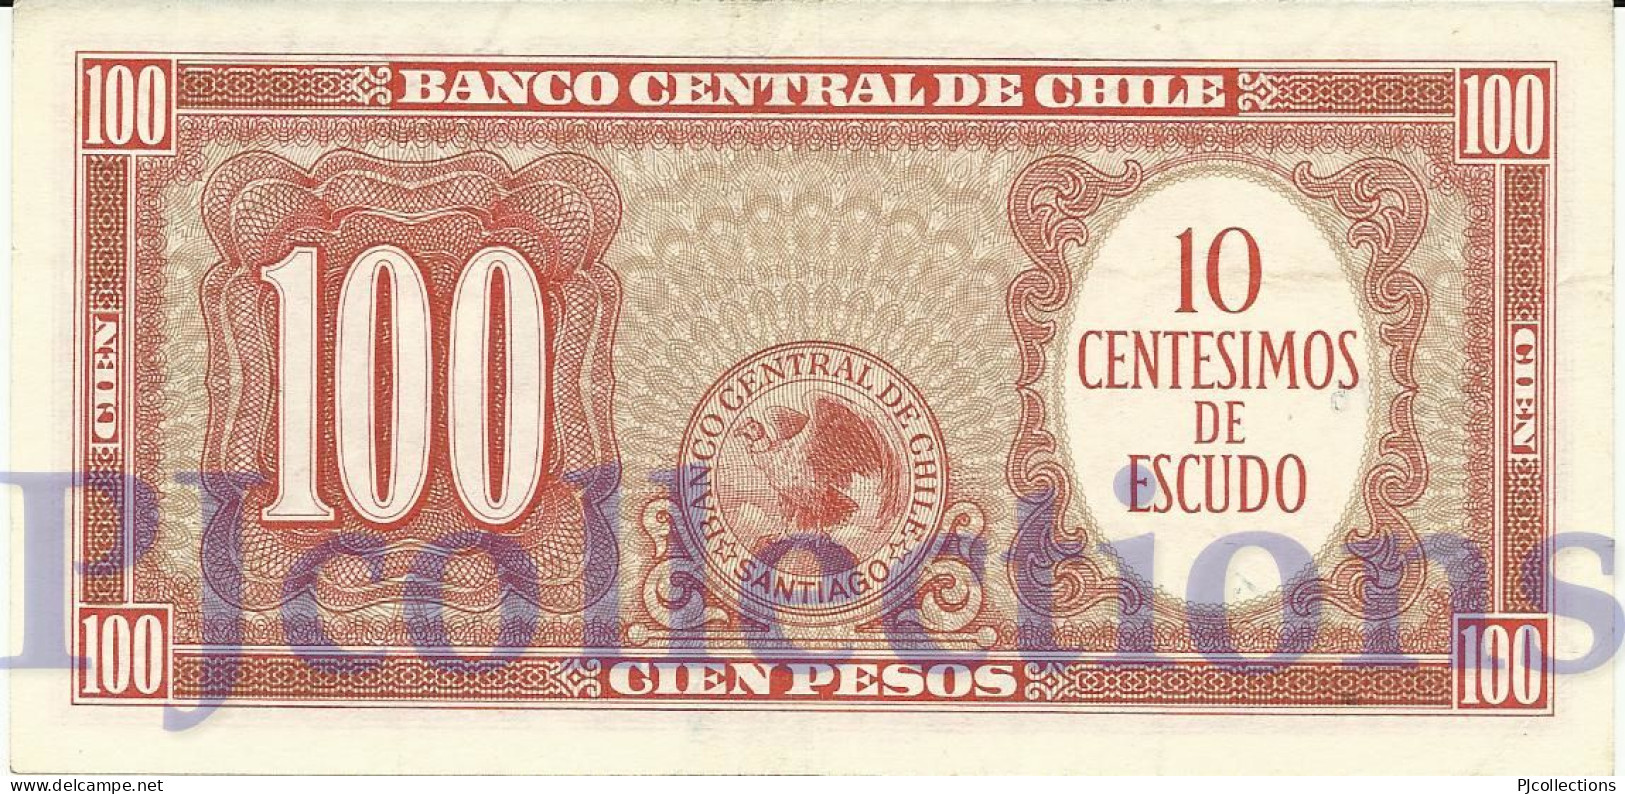 CHILE 10 CENTESIMOS 1960/1961 PICK 127a AUNC - Chile